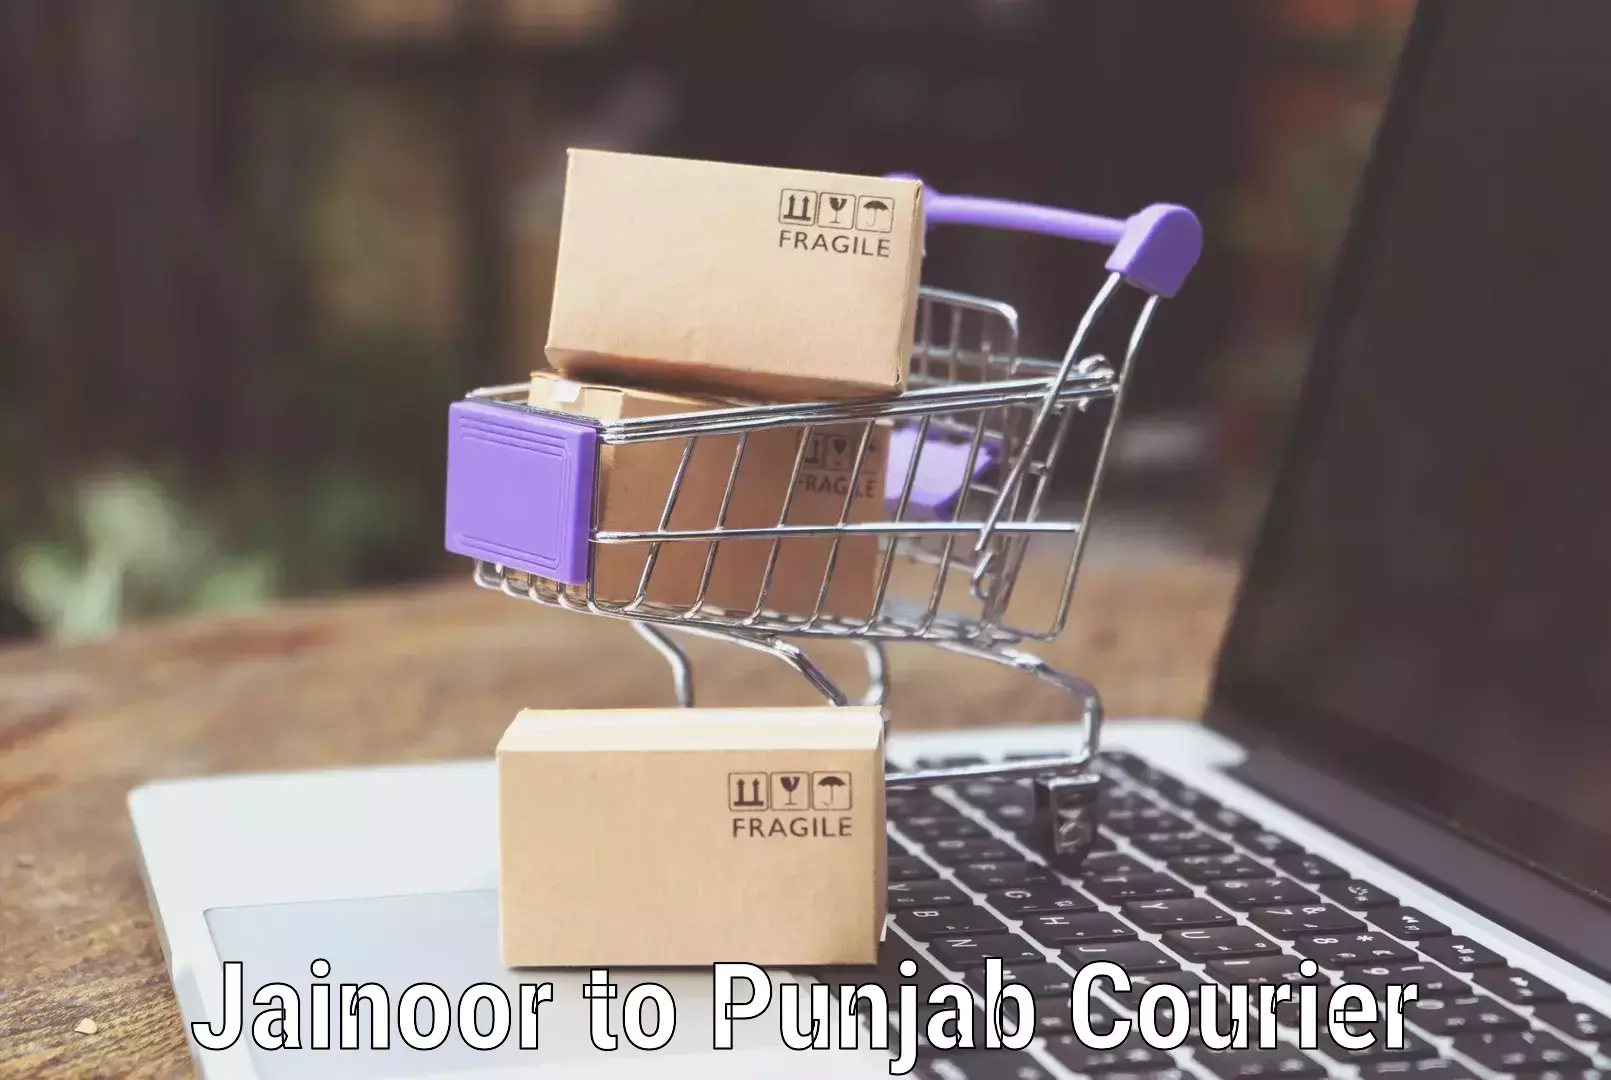 Luggage transport pricing Jainoor to Punjab